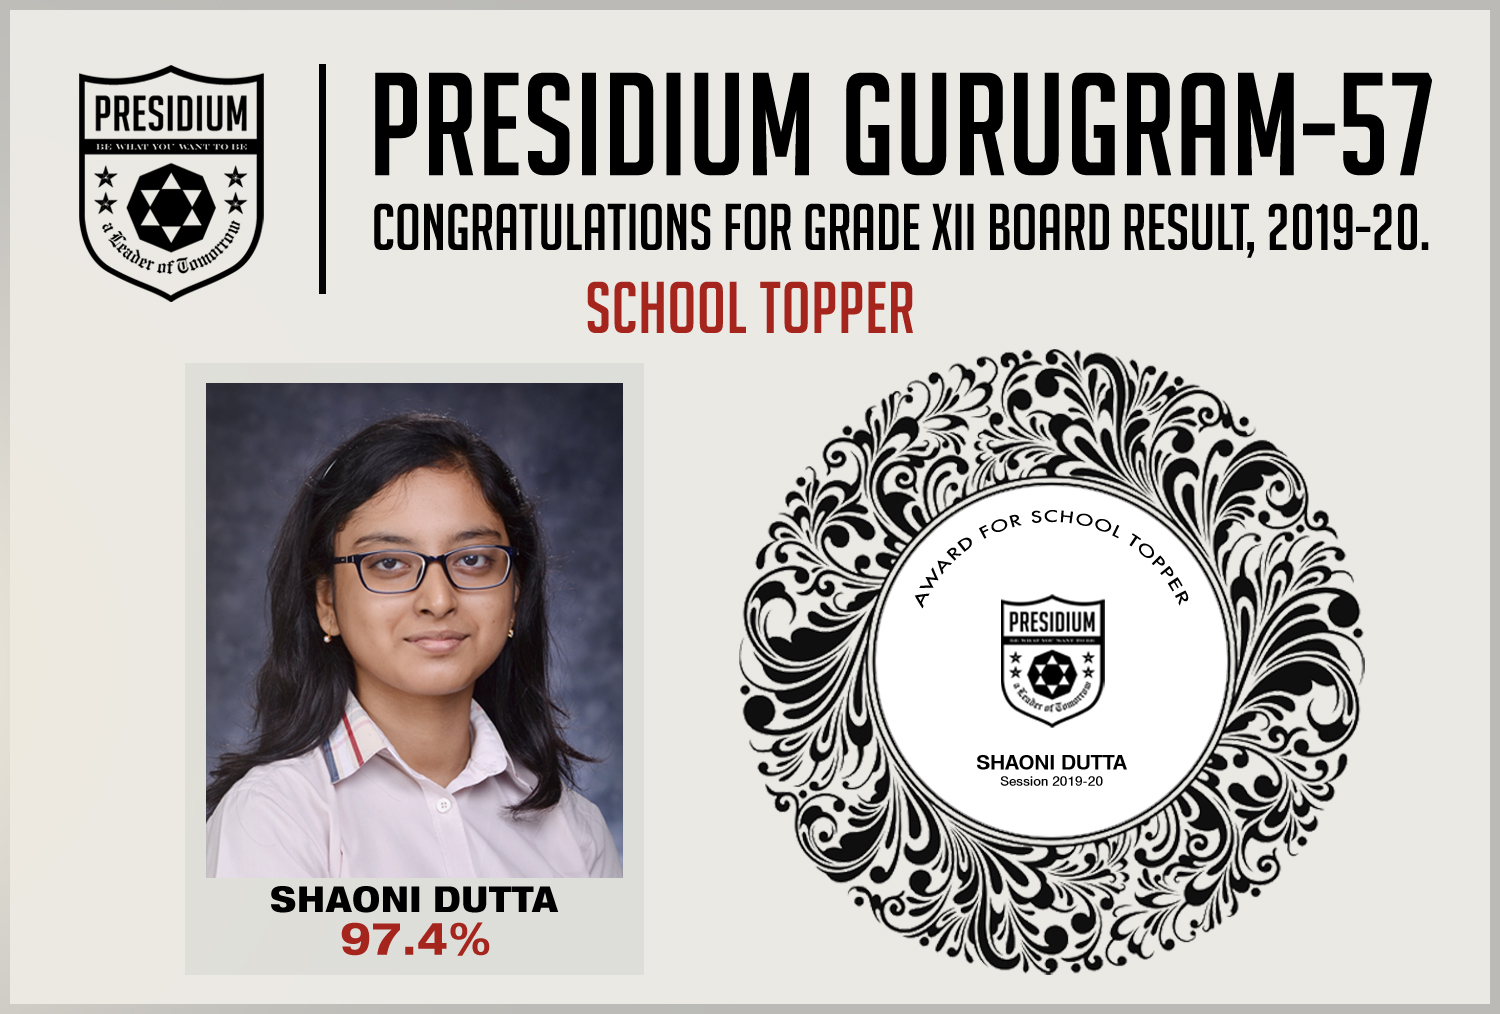 Presidium Gurgaon-57, CONGRATULATIONS STUDENTS FOR BRILLIANT 12TH BOARD RESULTS!